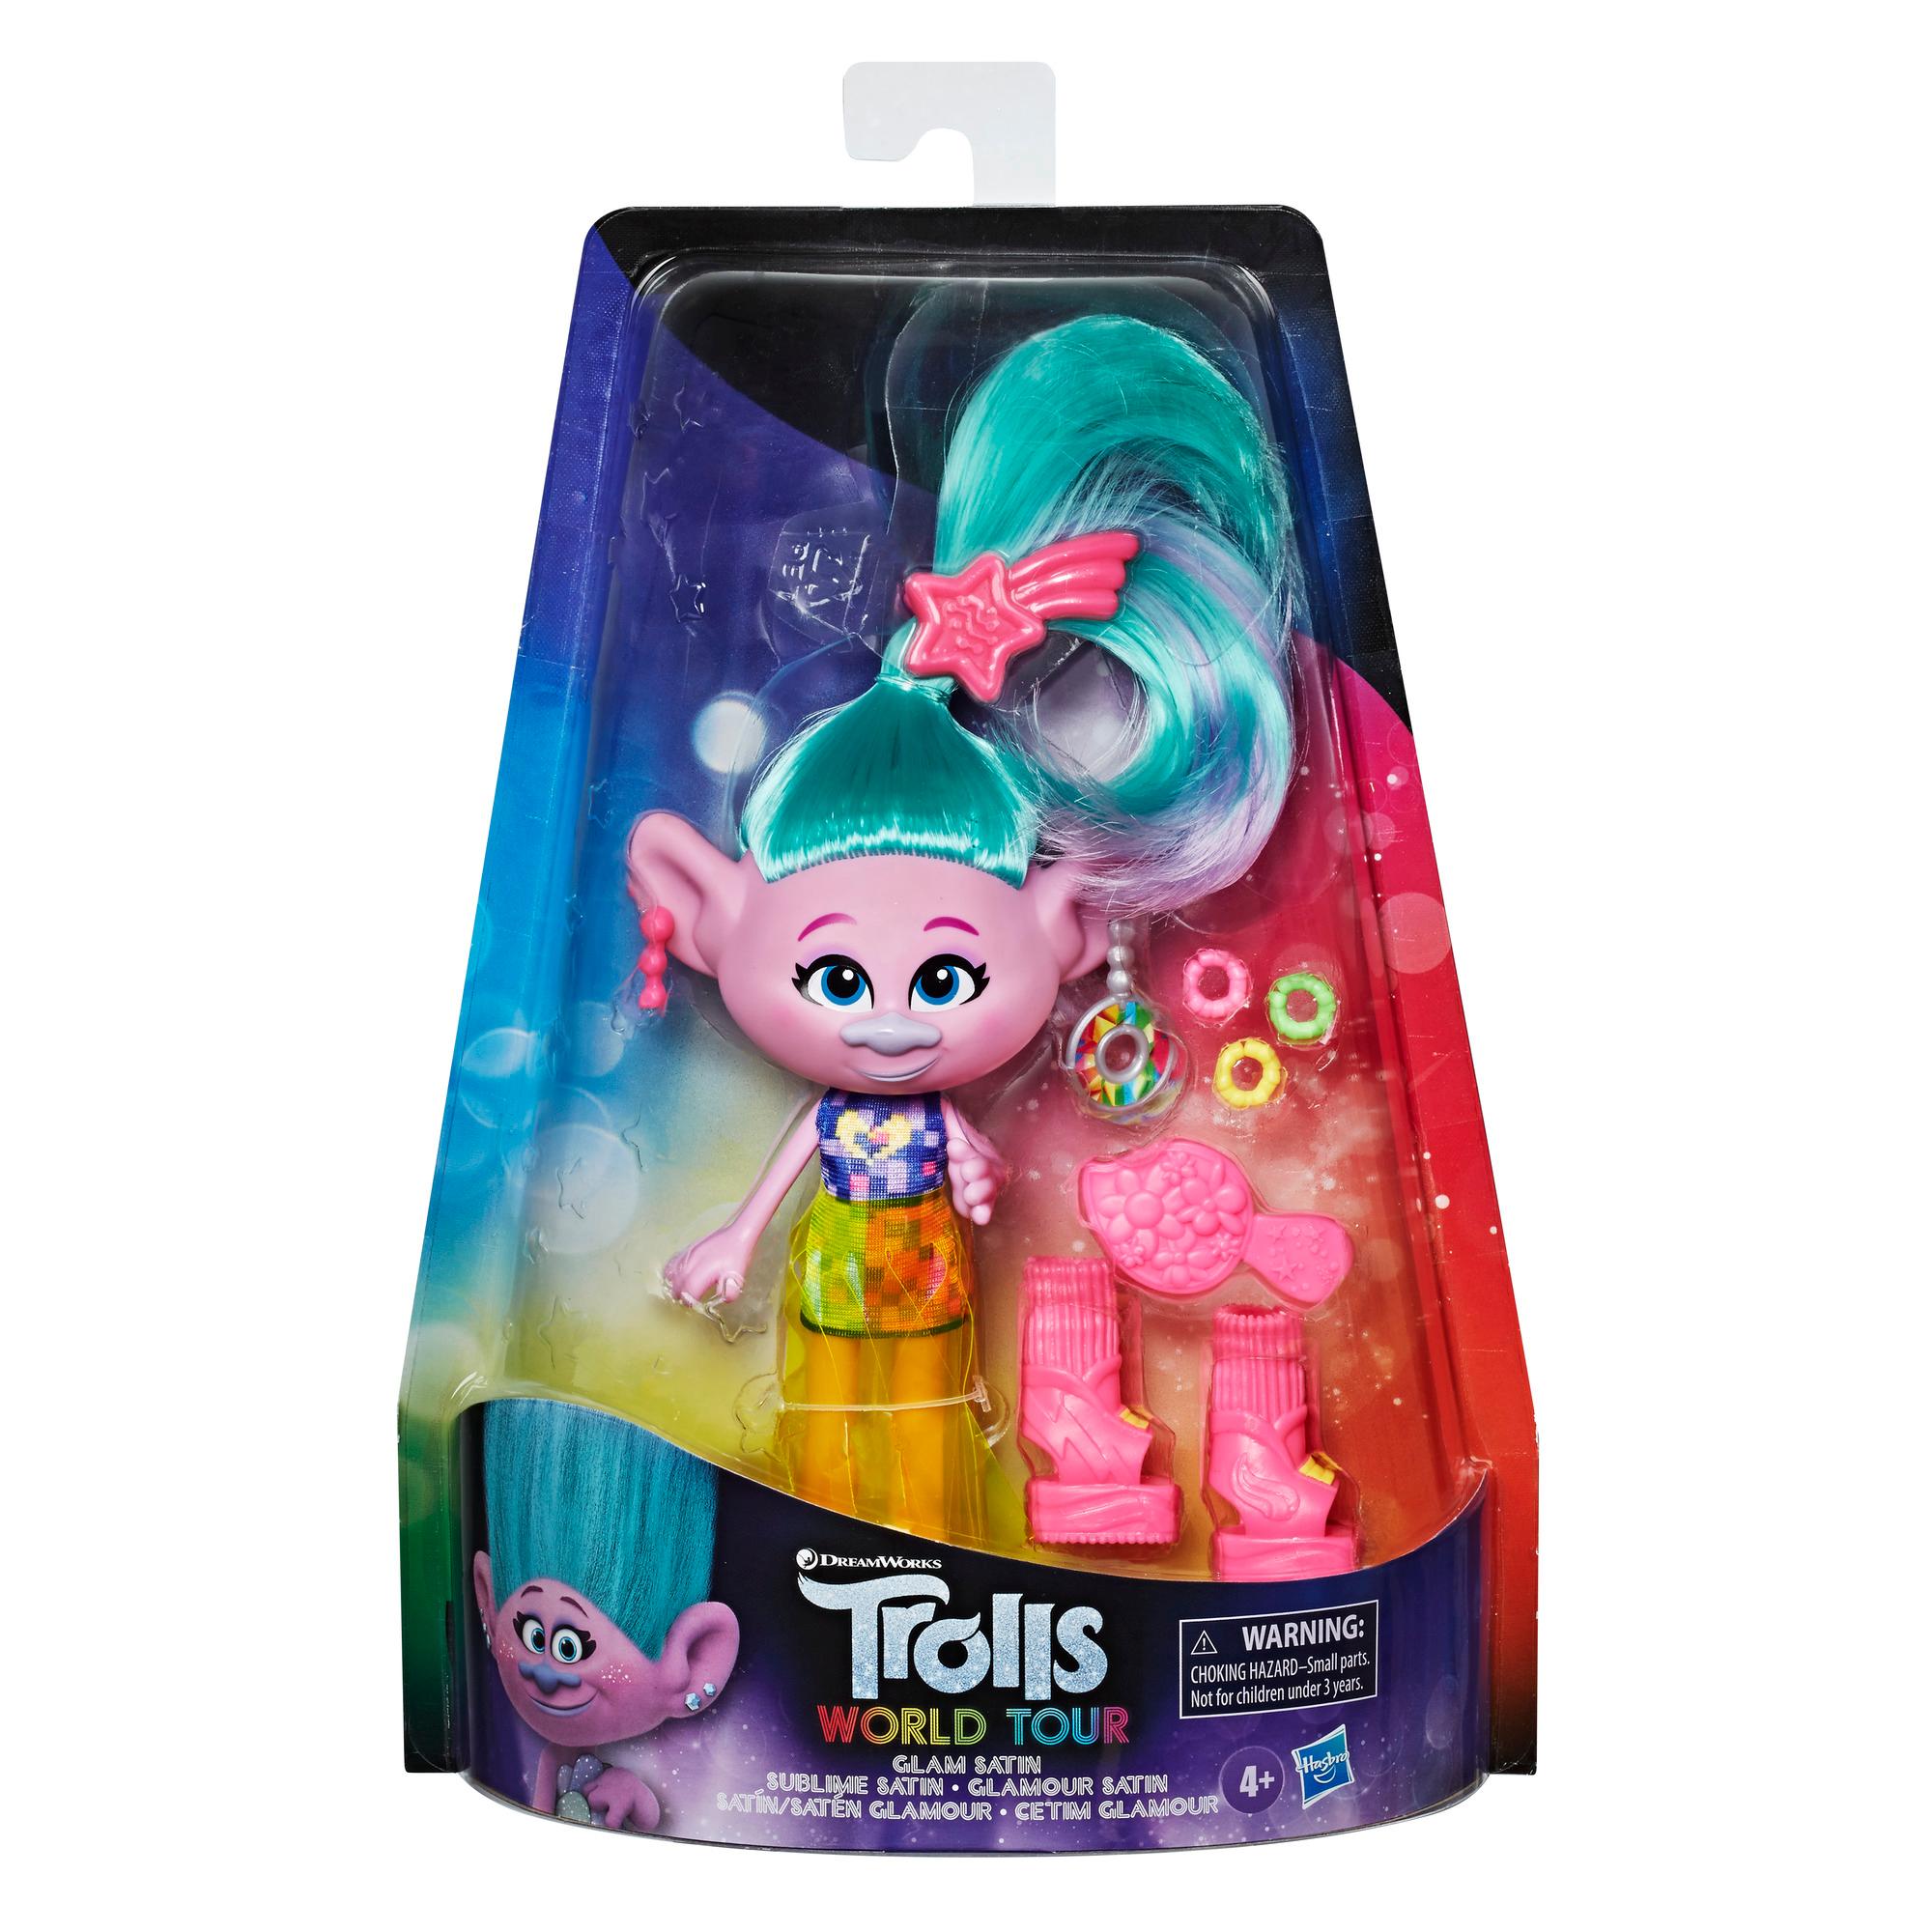 Trolls de DreamWorks, Poupée Mannequin Mode Deluxe Satin, avec robe et plus, du film Trolls 2 : Tournée mondiale, jouet pour enfants